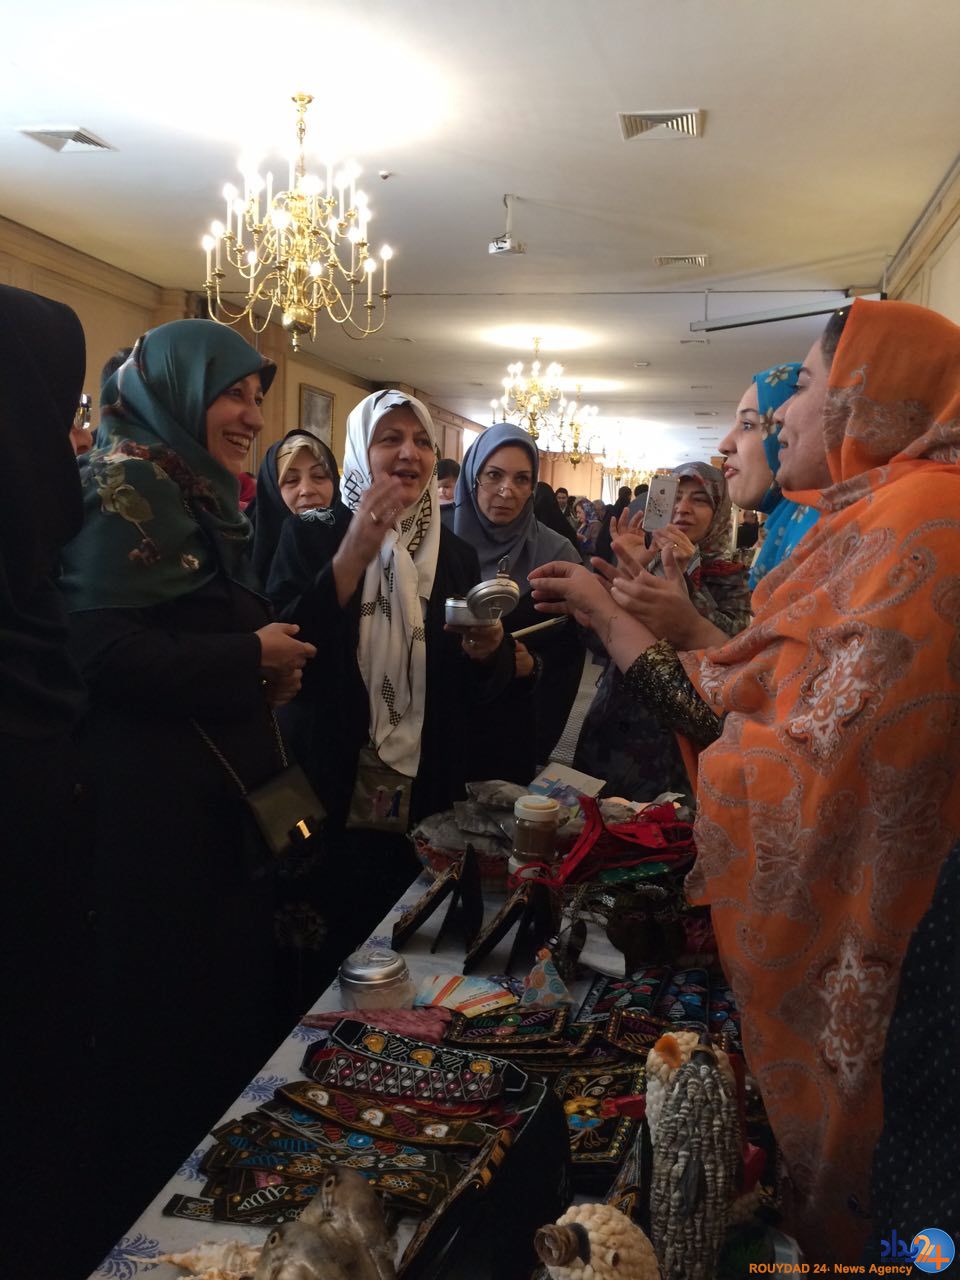 همسر «ظریف» در بازارچه خیریه وزارت خارجه (تصویر)